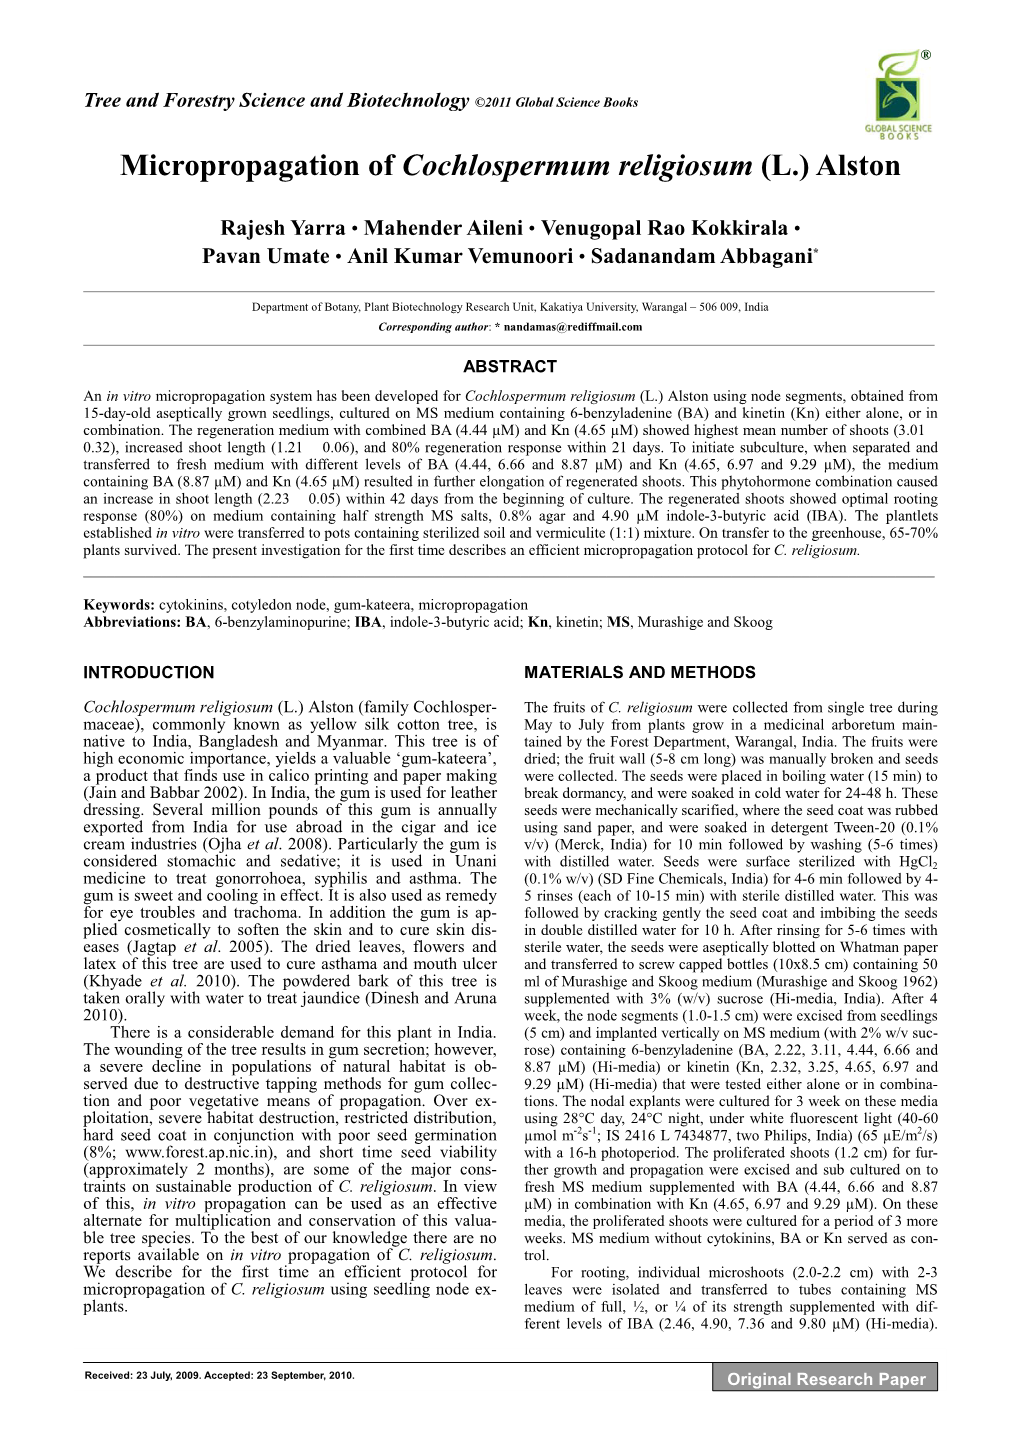 Micropropagation of Cochlospermum Religiosum (L.) Alston